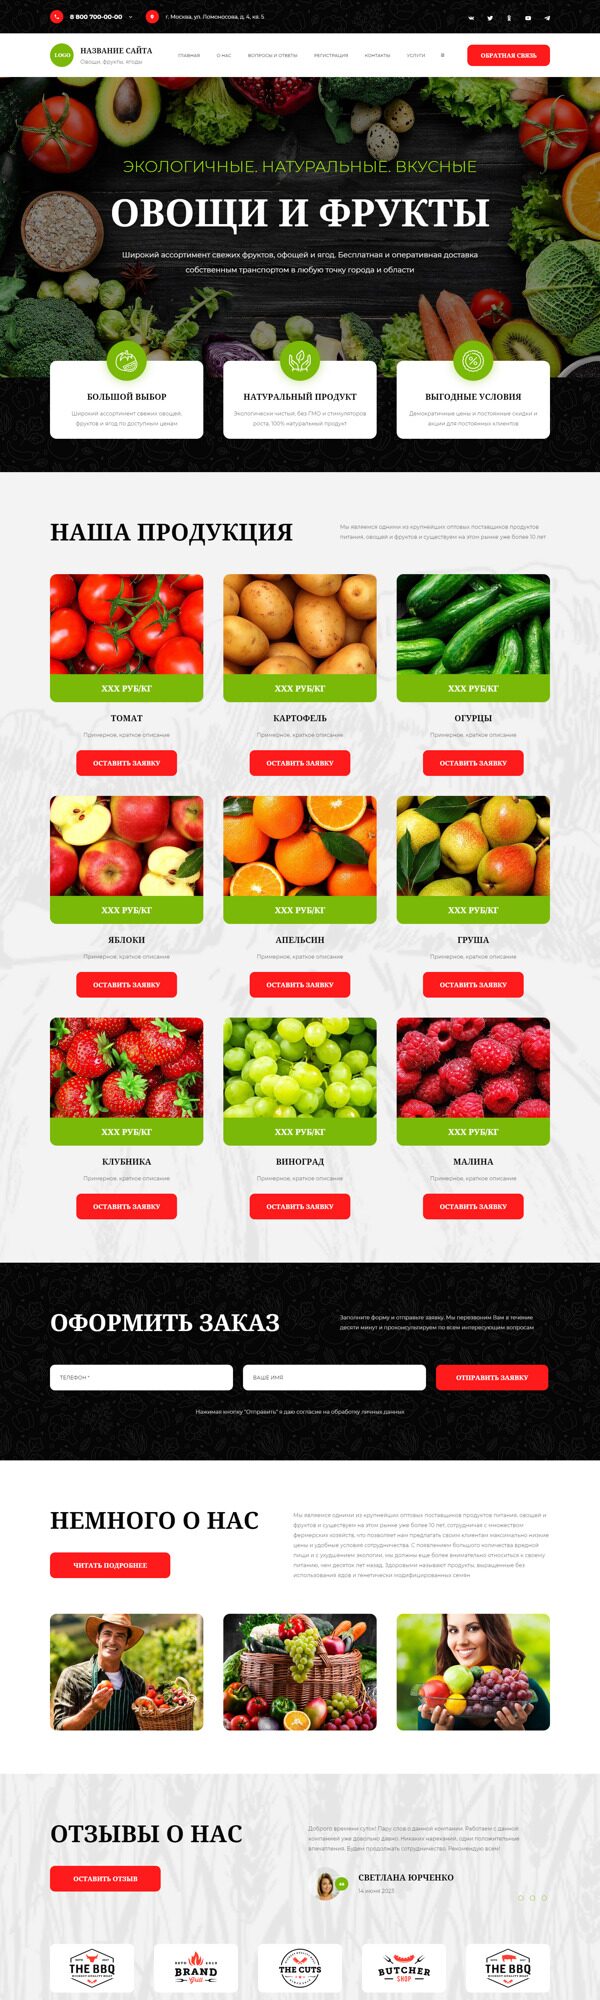 Готовый Сайт-Бизнес № 5439714 - Овощи, фрукты, ягоды (Десктопная версия)